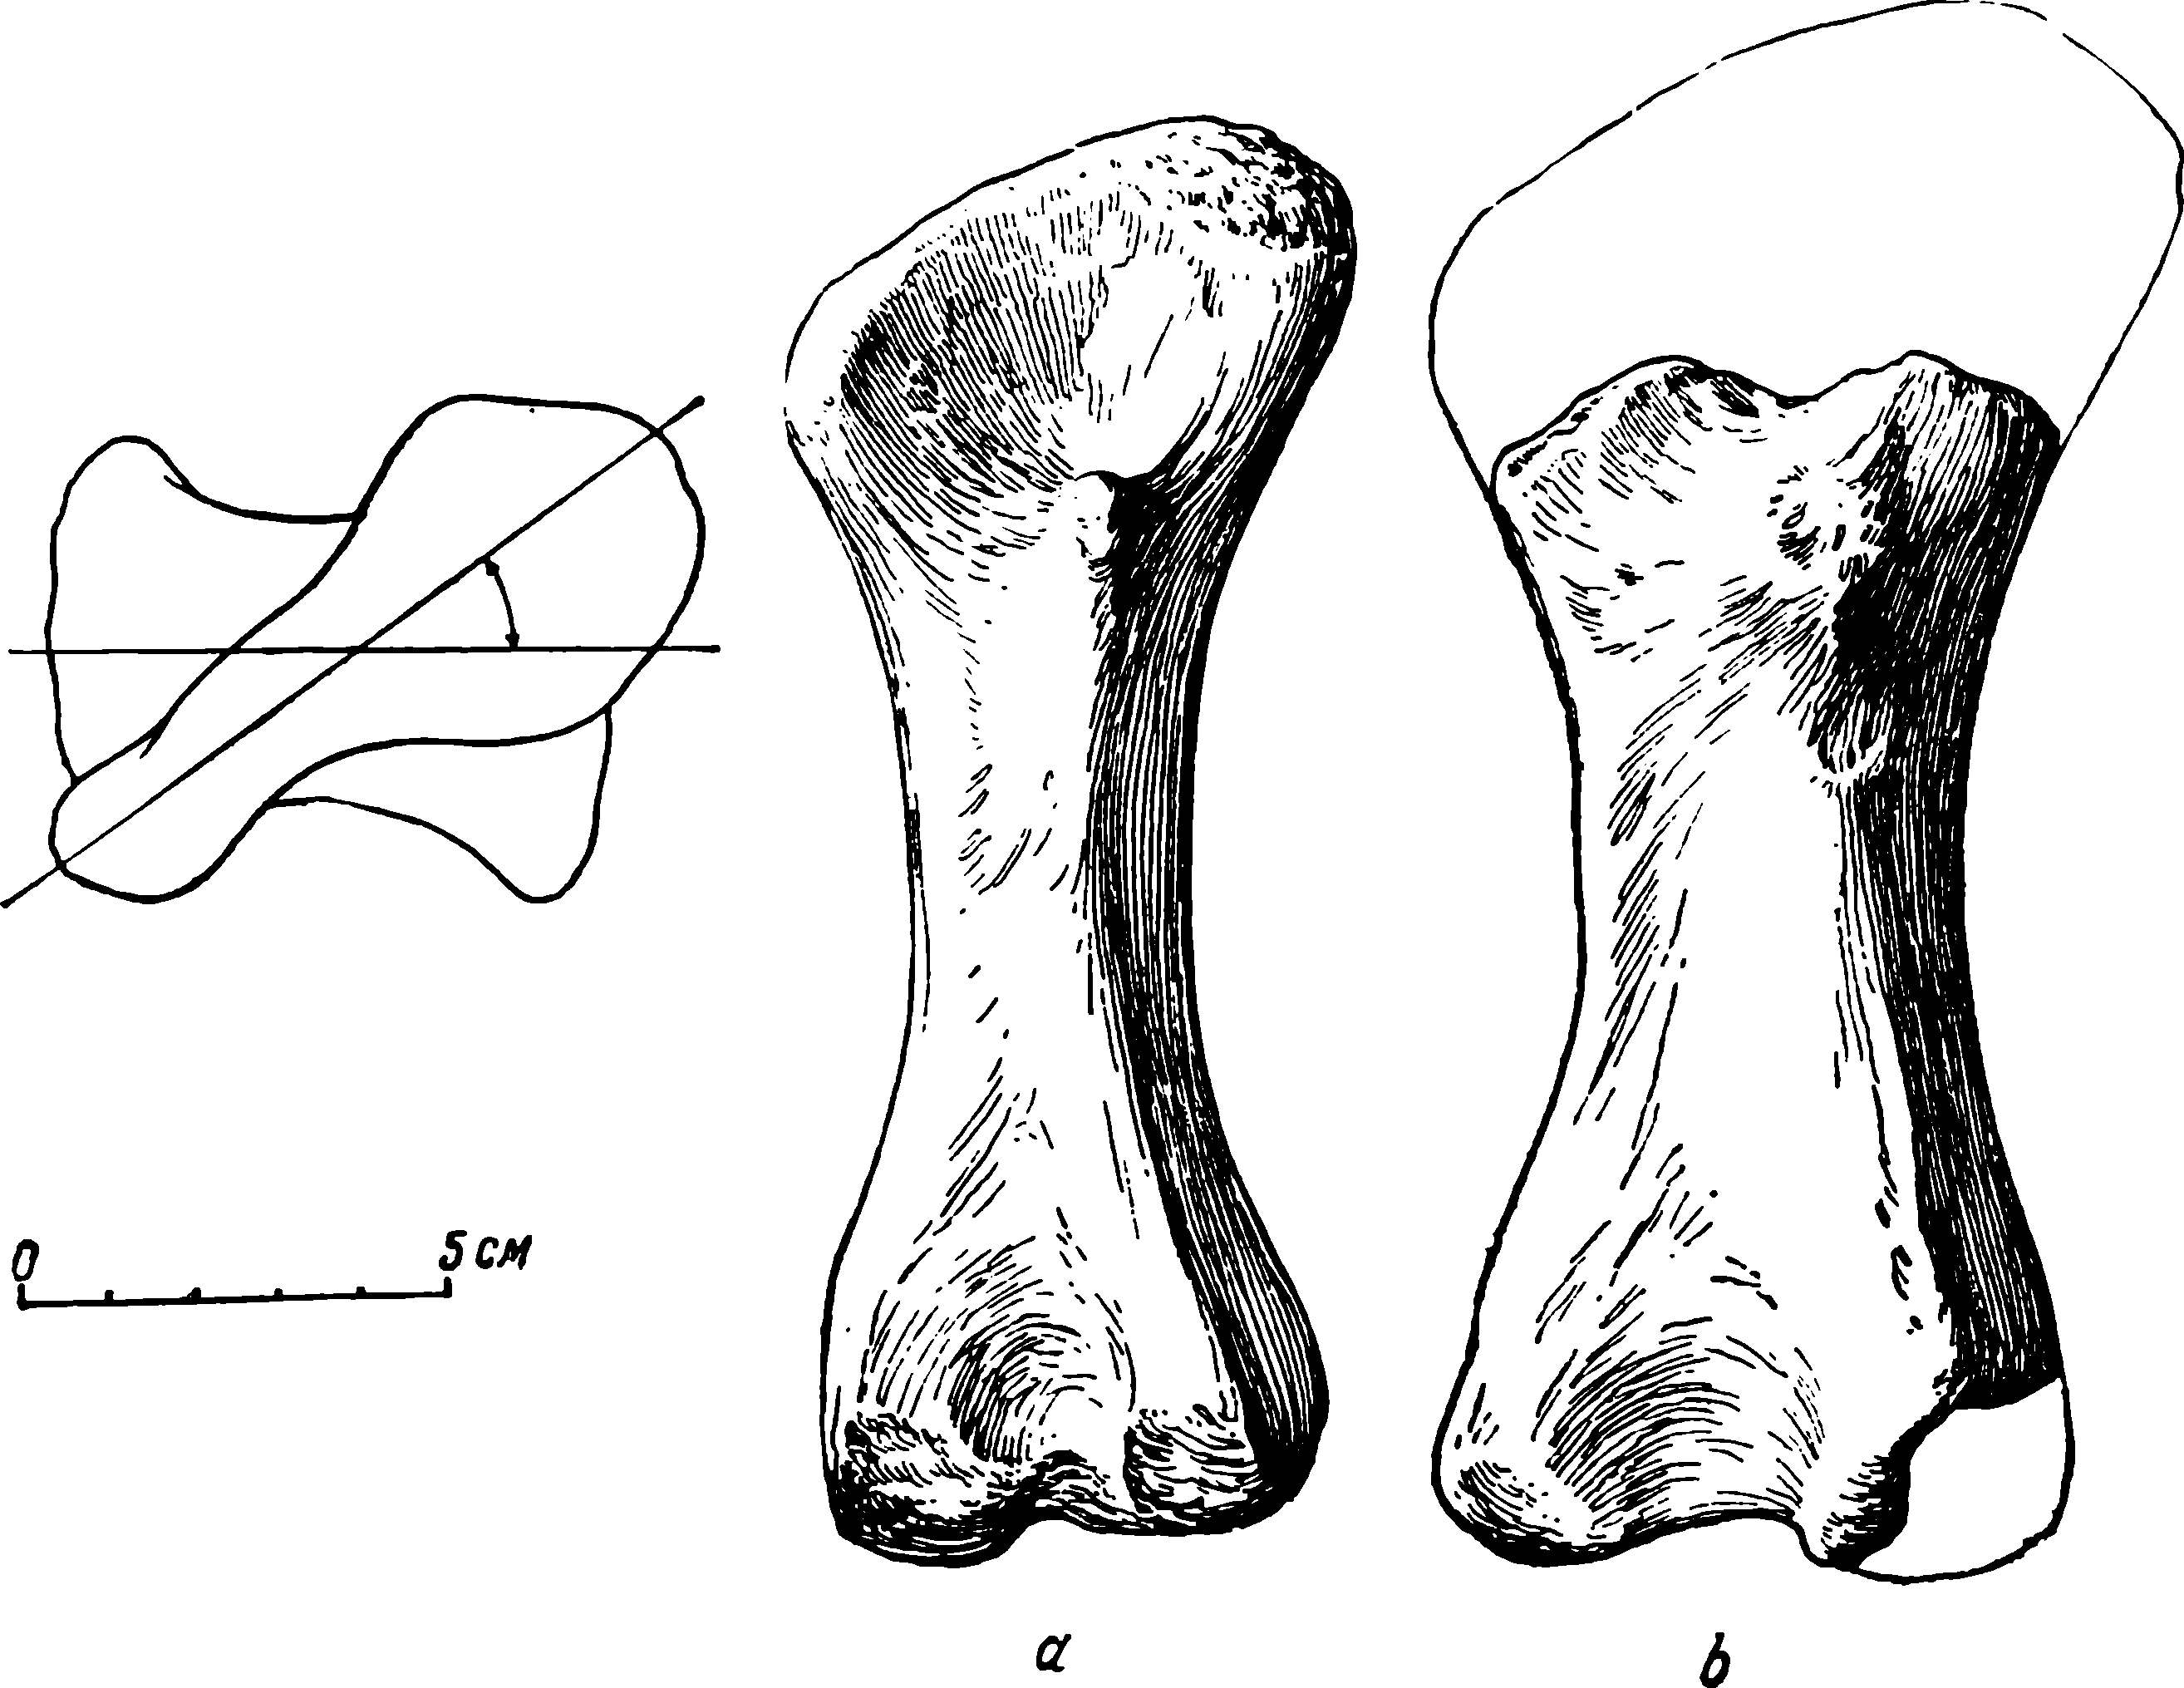 Рис. 63. Phreatosaurus bazhovi gen. et sp. nov. Левые бедренные кости (femora). a — ЛГМ/ЧМП № 75 с задневентральной стороны; б — МОИП/ЧМП № 6 — с той же стороны. Слева дана схема перекреста эпифизов